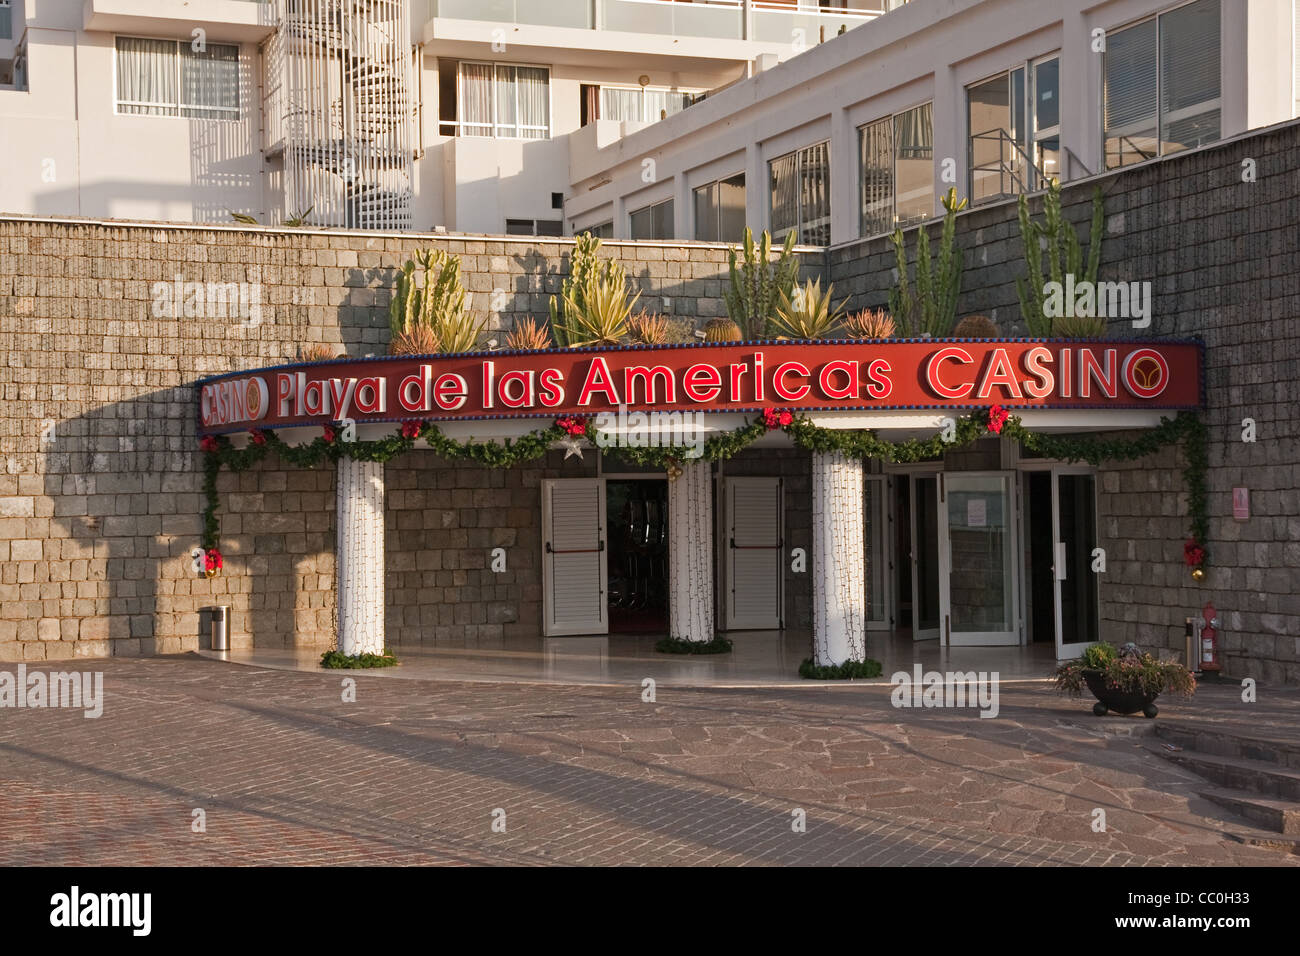 Playa de las Americas Casino entrance Stock Photo